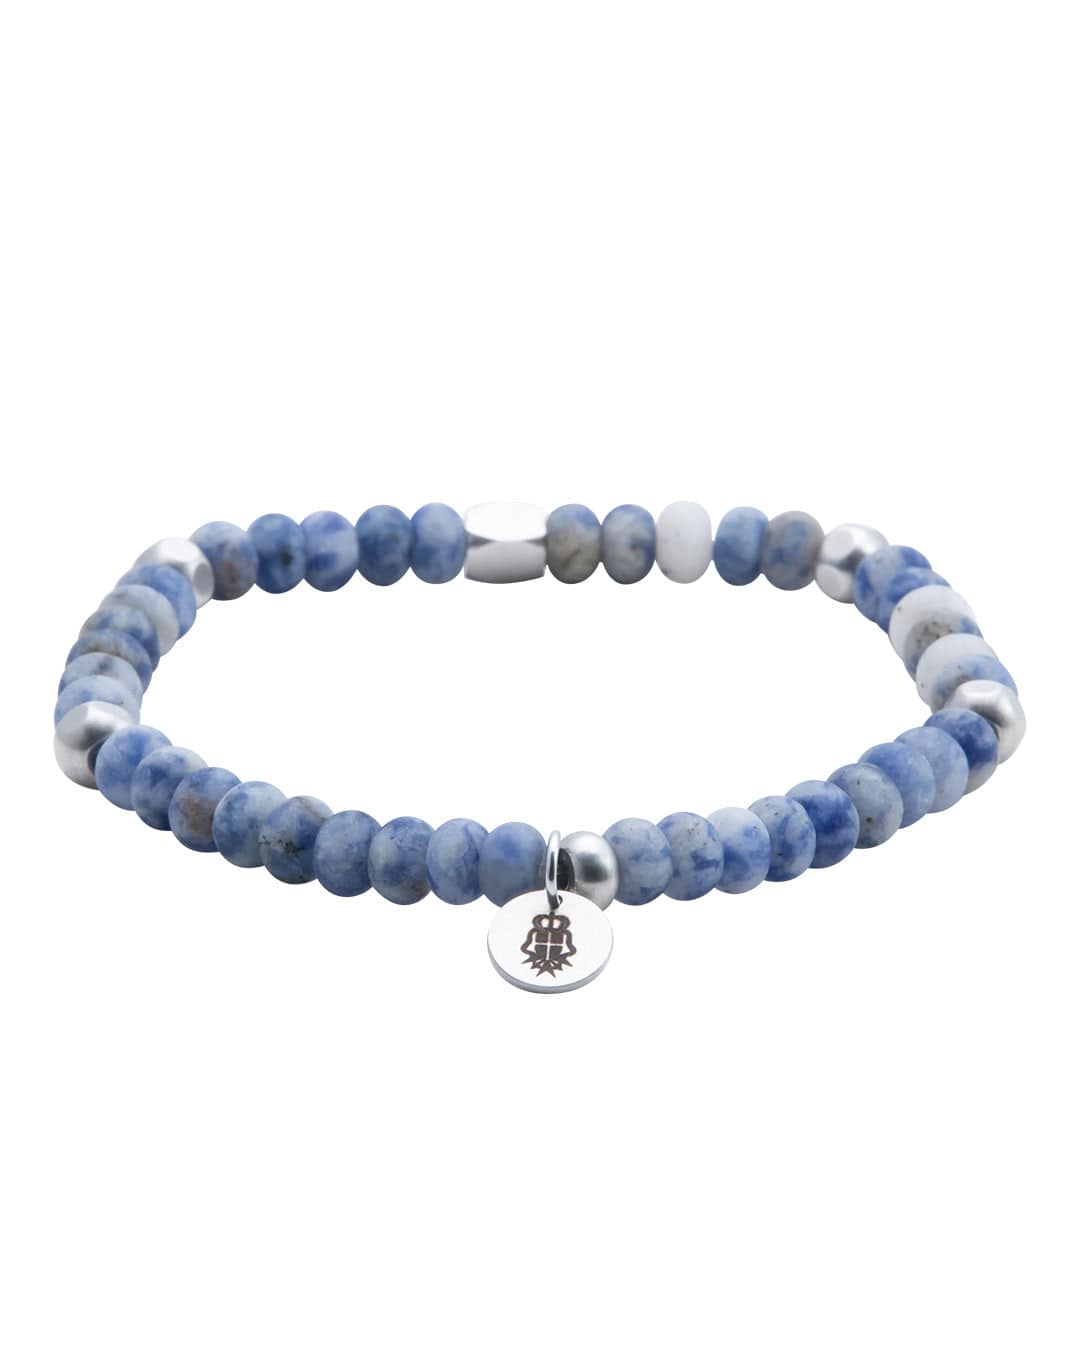 Gagliardi Bracelets Gagliardi Blue Jasper Stone Bead Bracelet With Charm